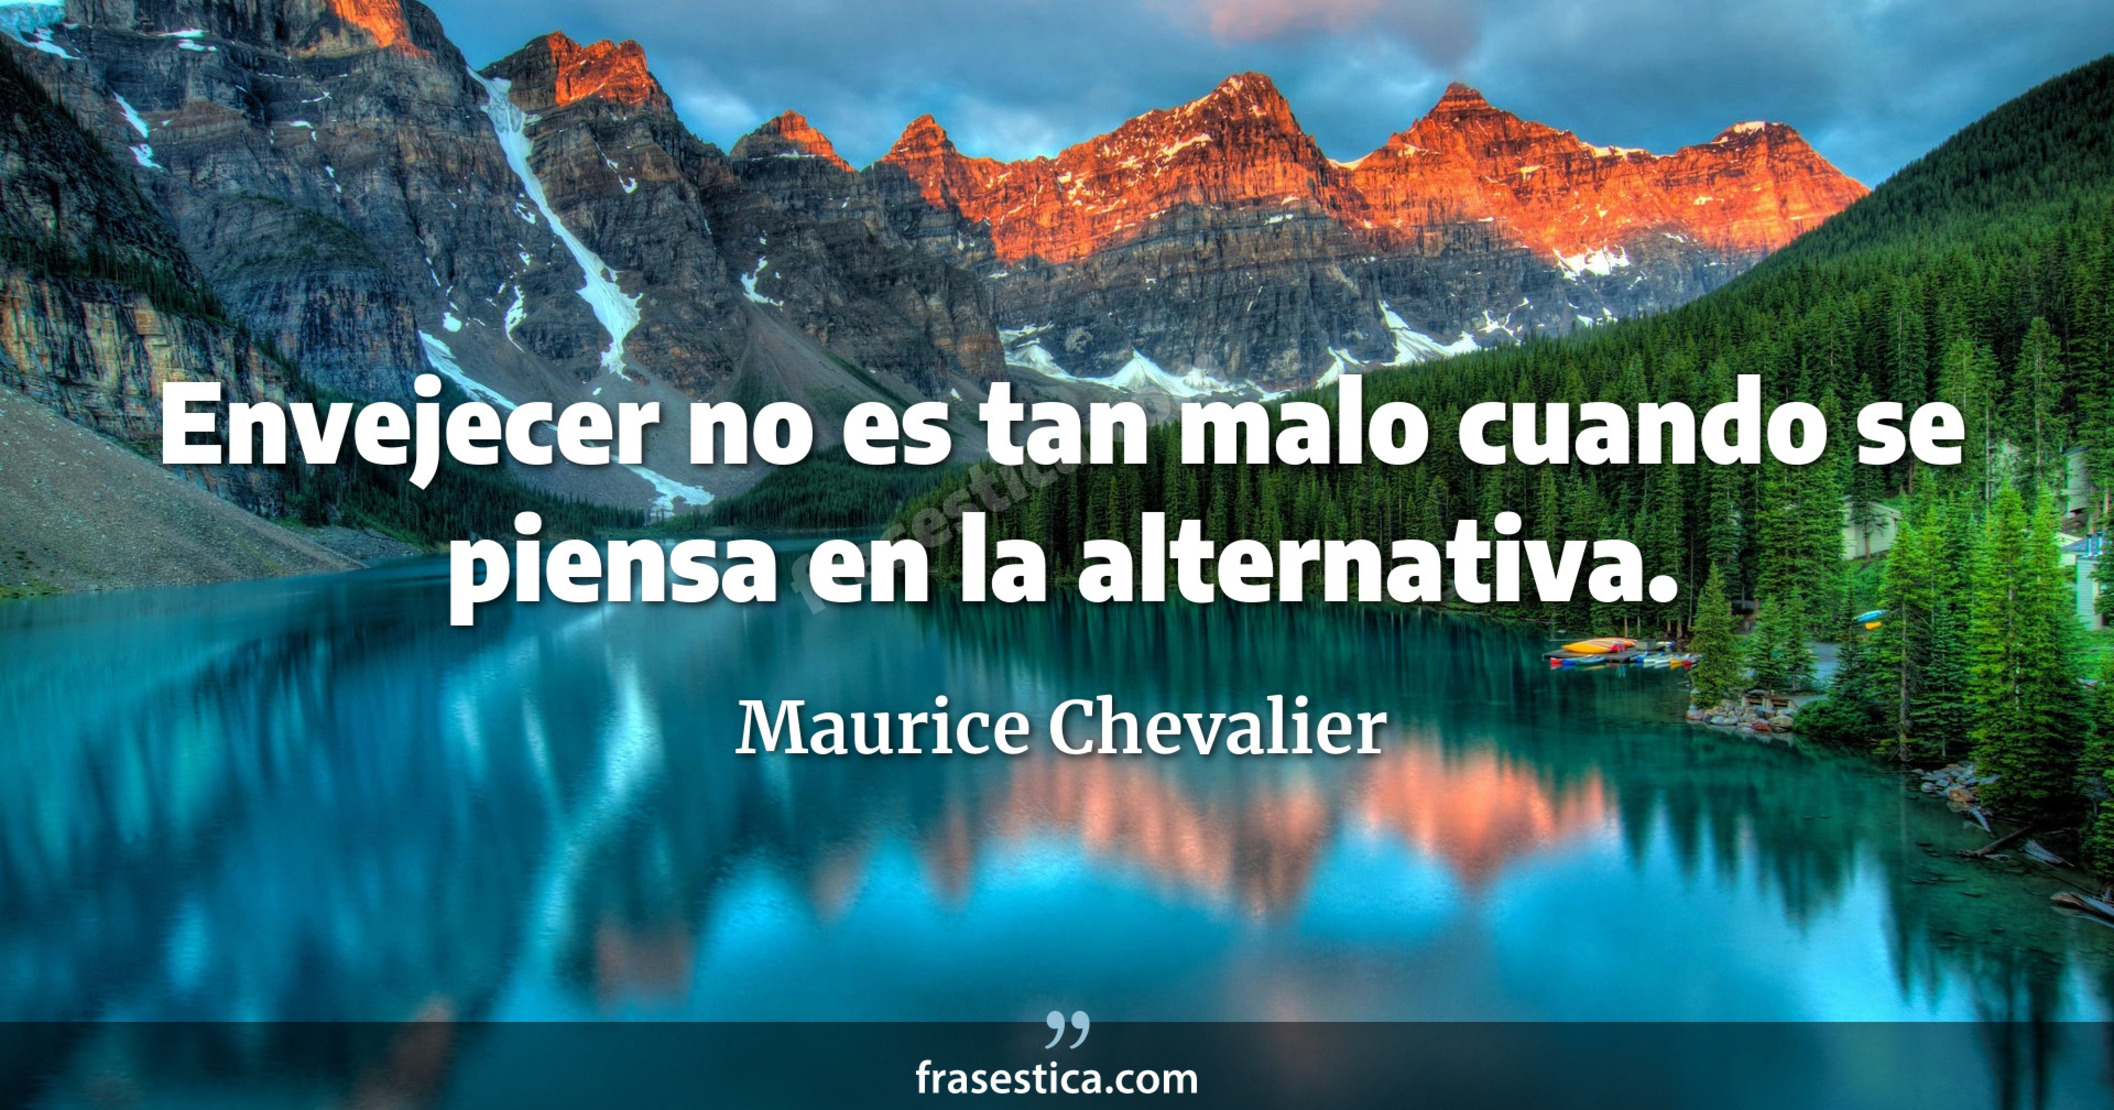 Envejecer no es tan malo cuando se piensa en la alternativa. - Maurice Chevalier